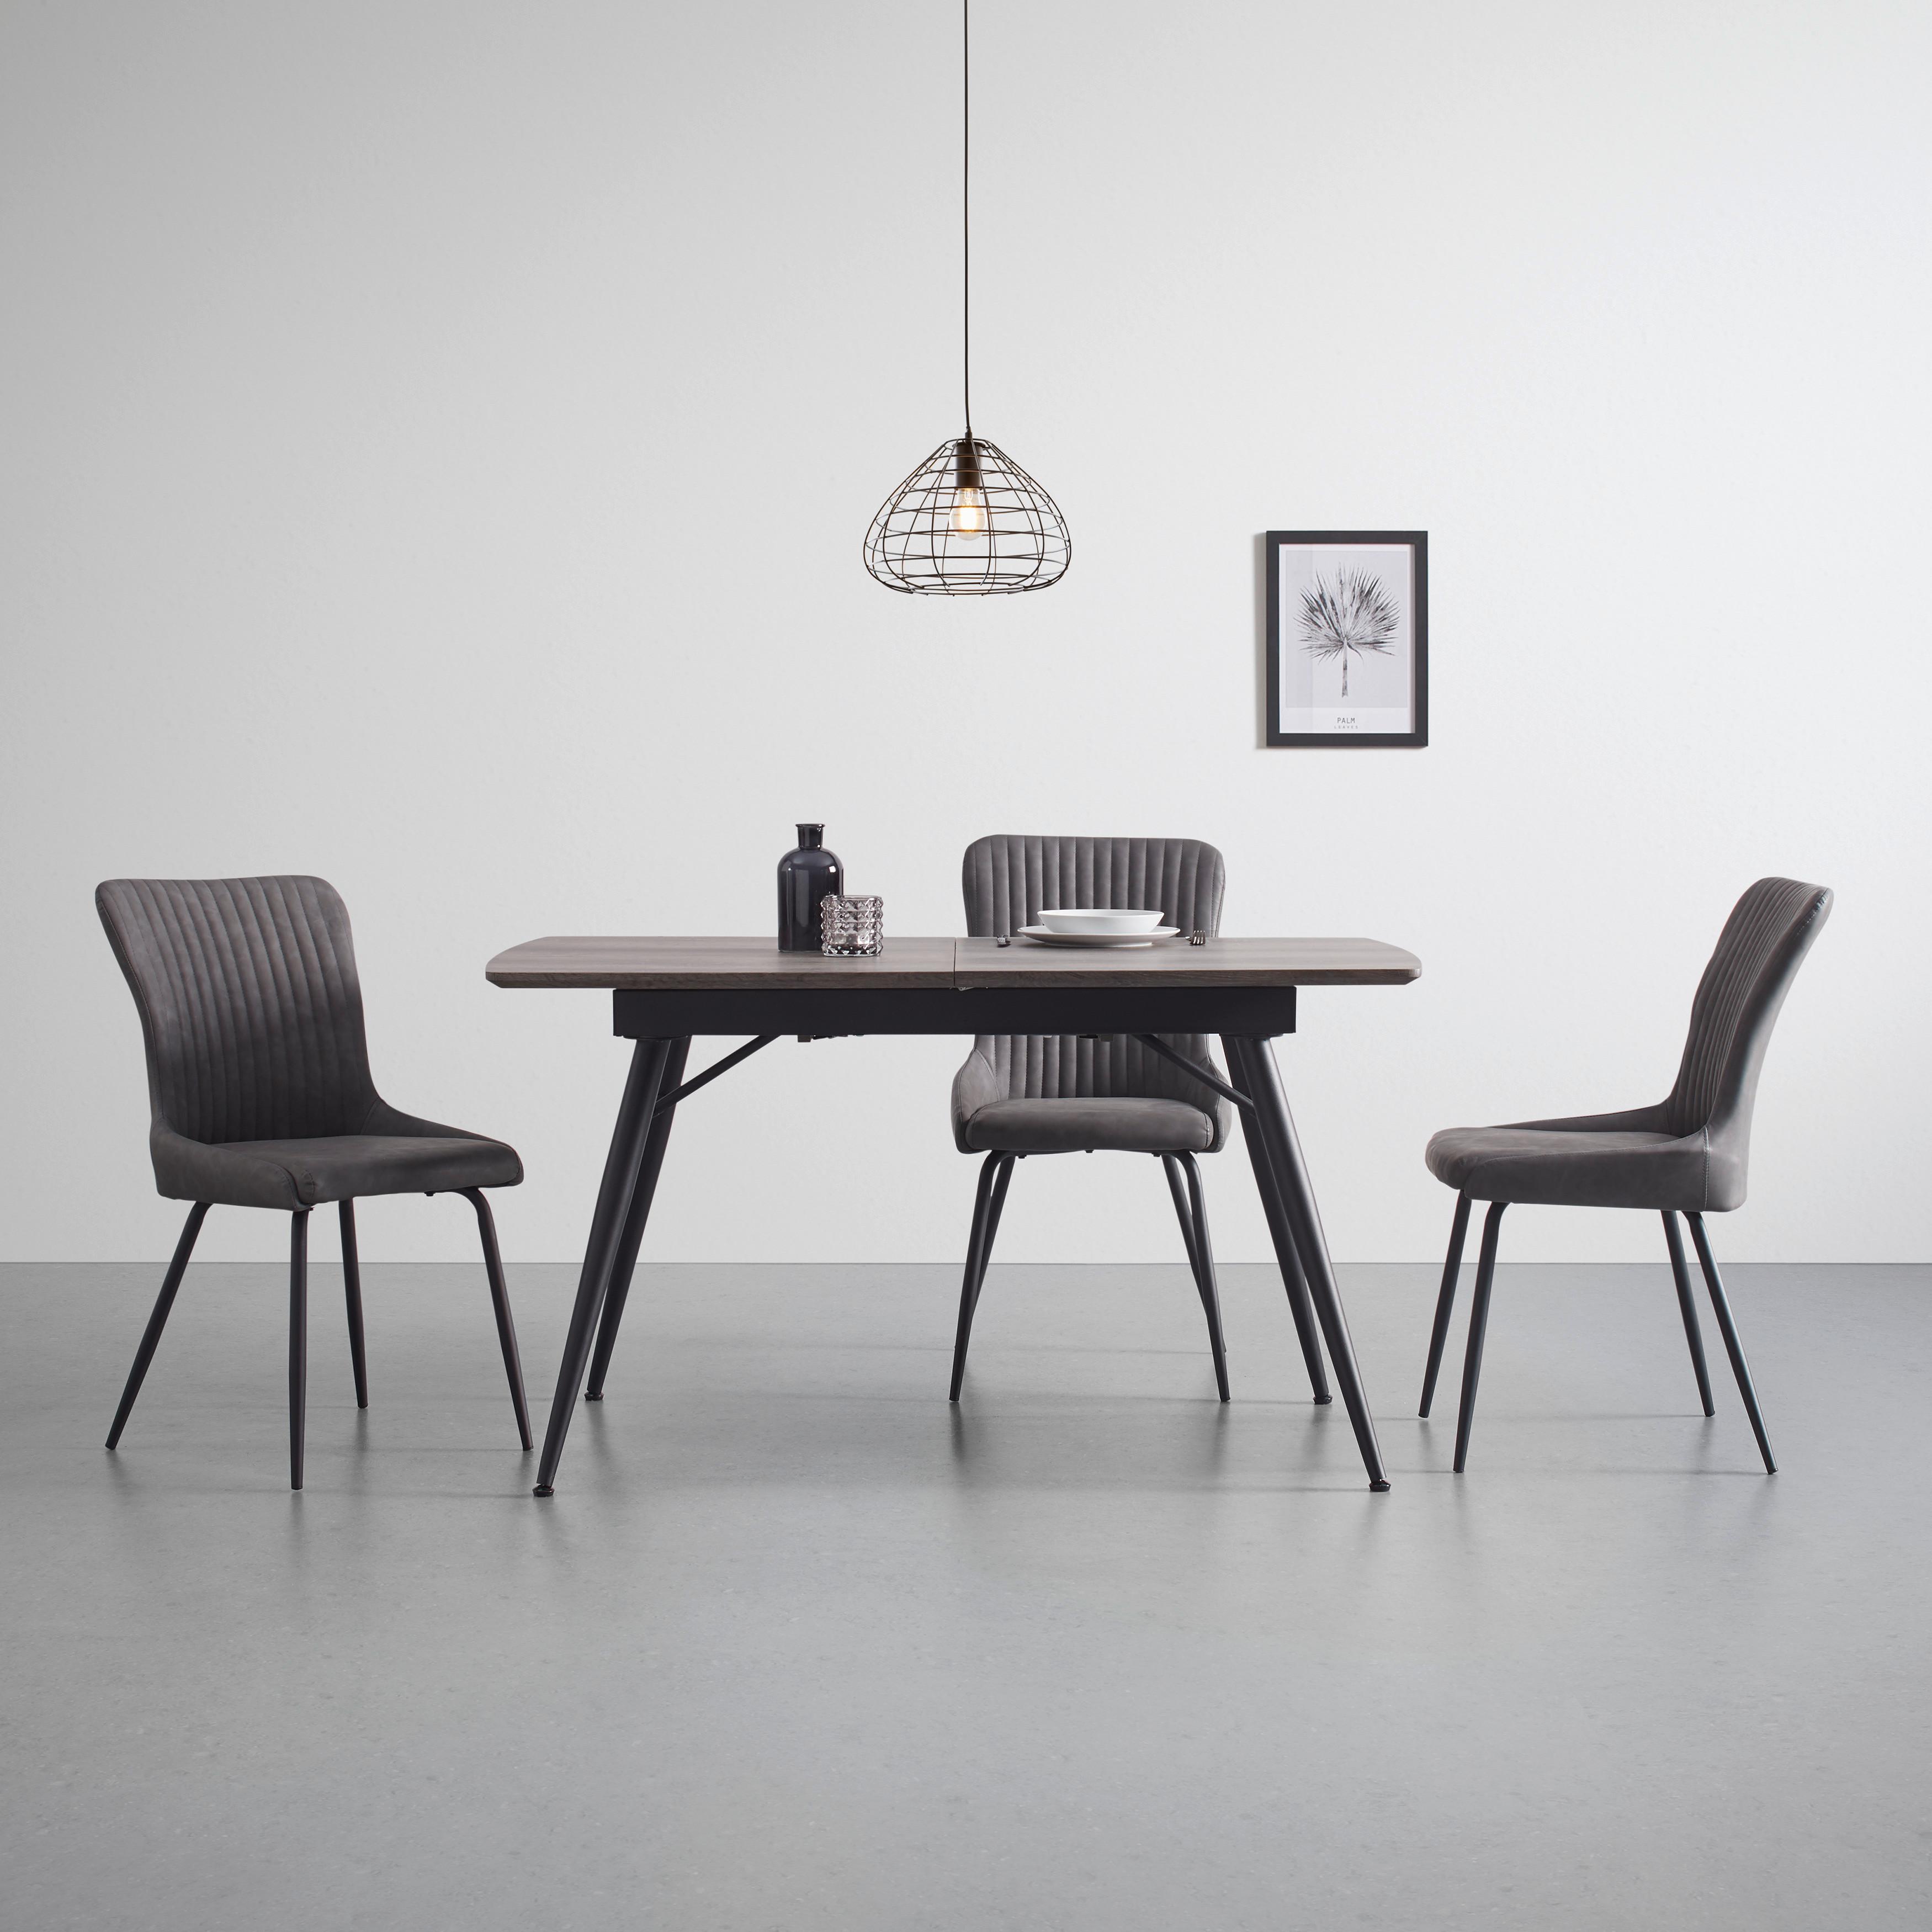 Rozkládací Jídelní Stůl Adriano 140-180cm - černá/barvy ořechu, Moderní, kov (140-180/80/76cm) - Bessagi Home